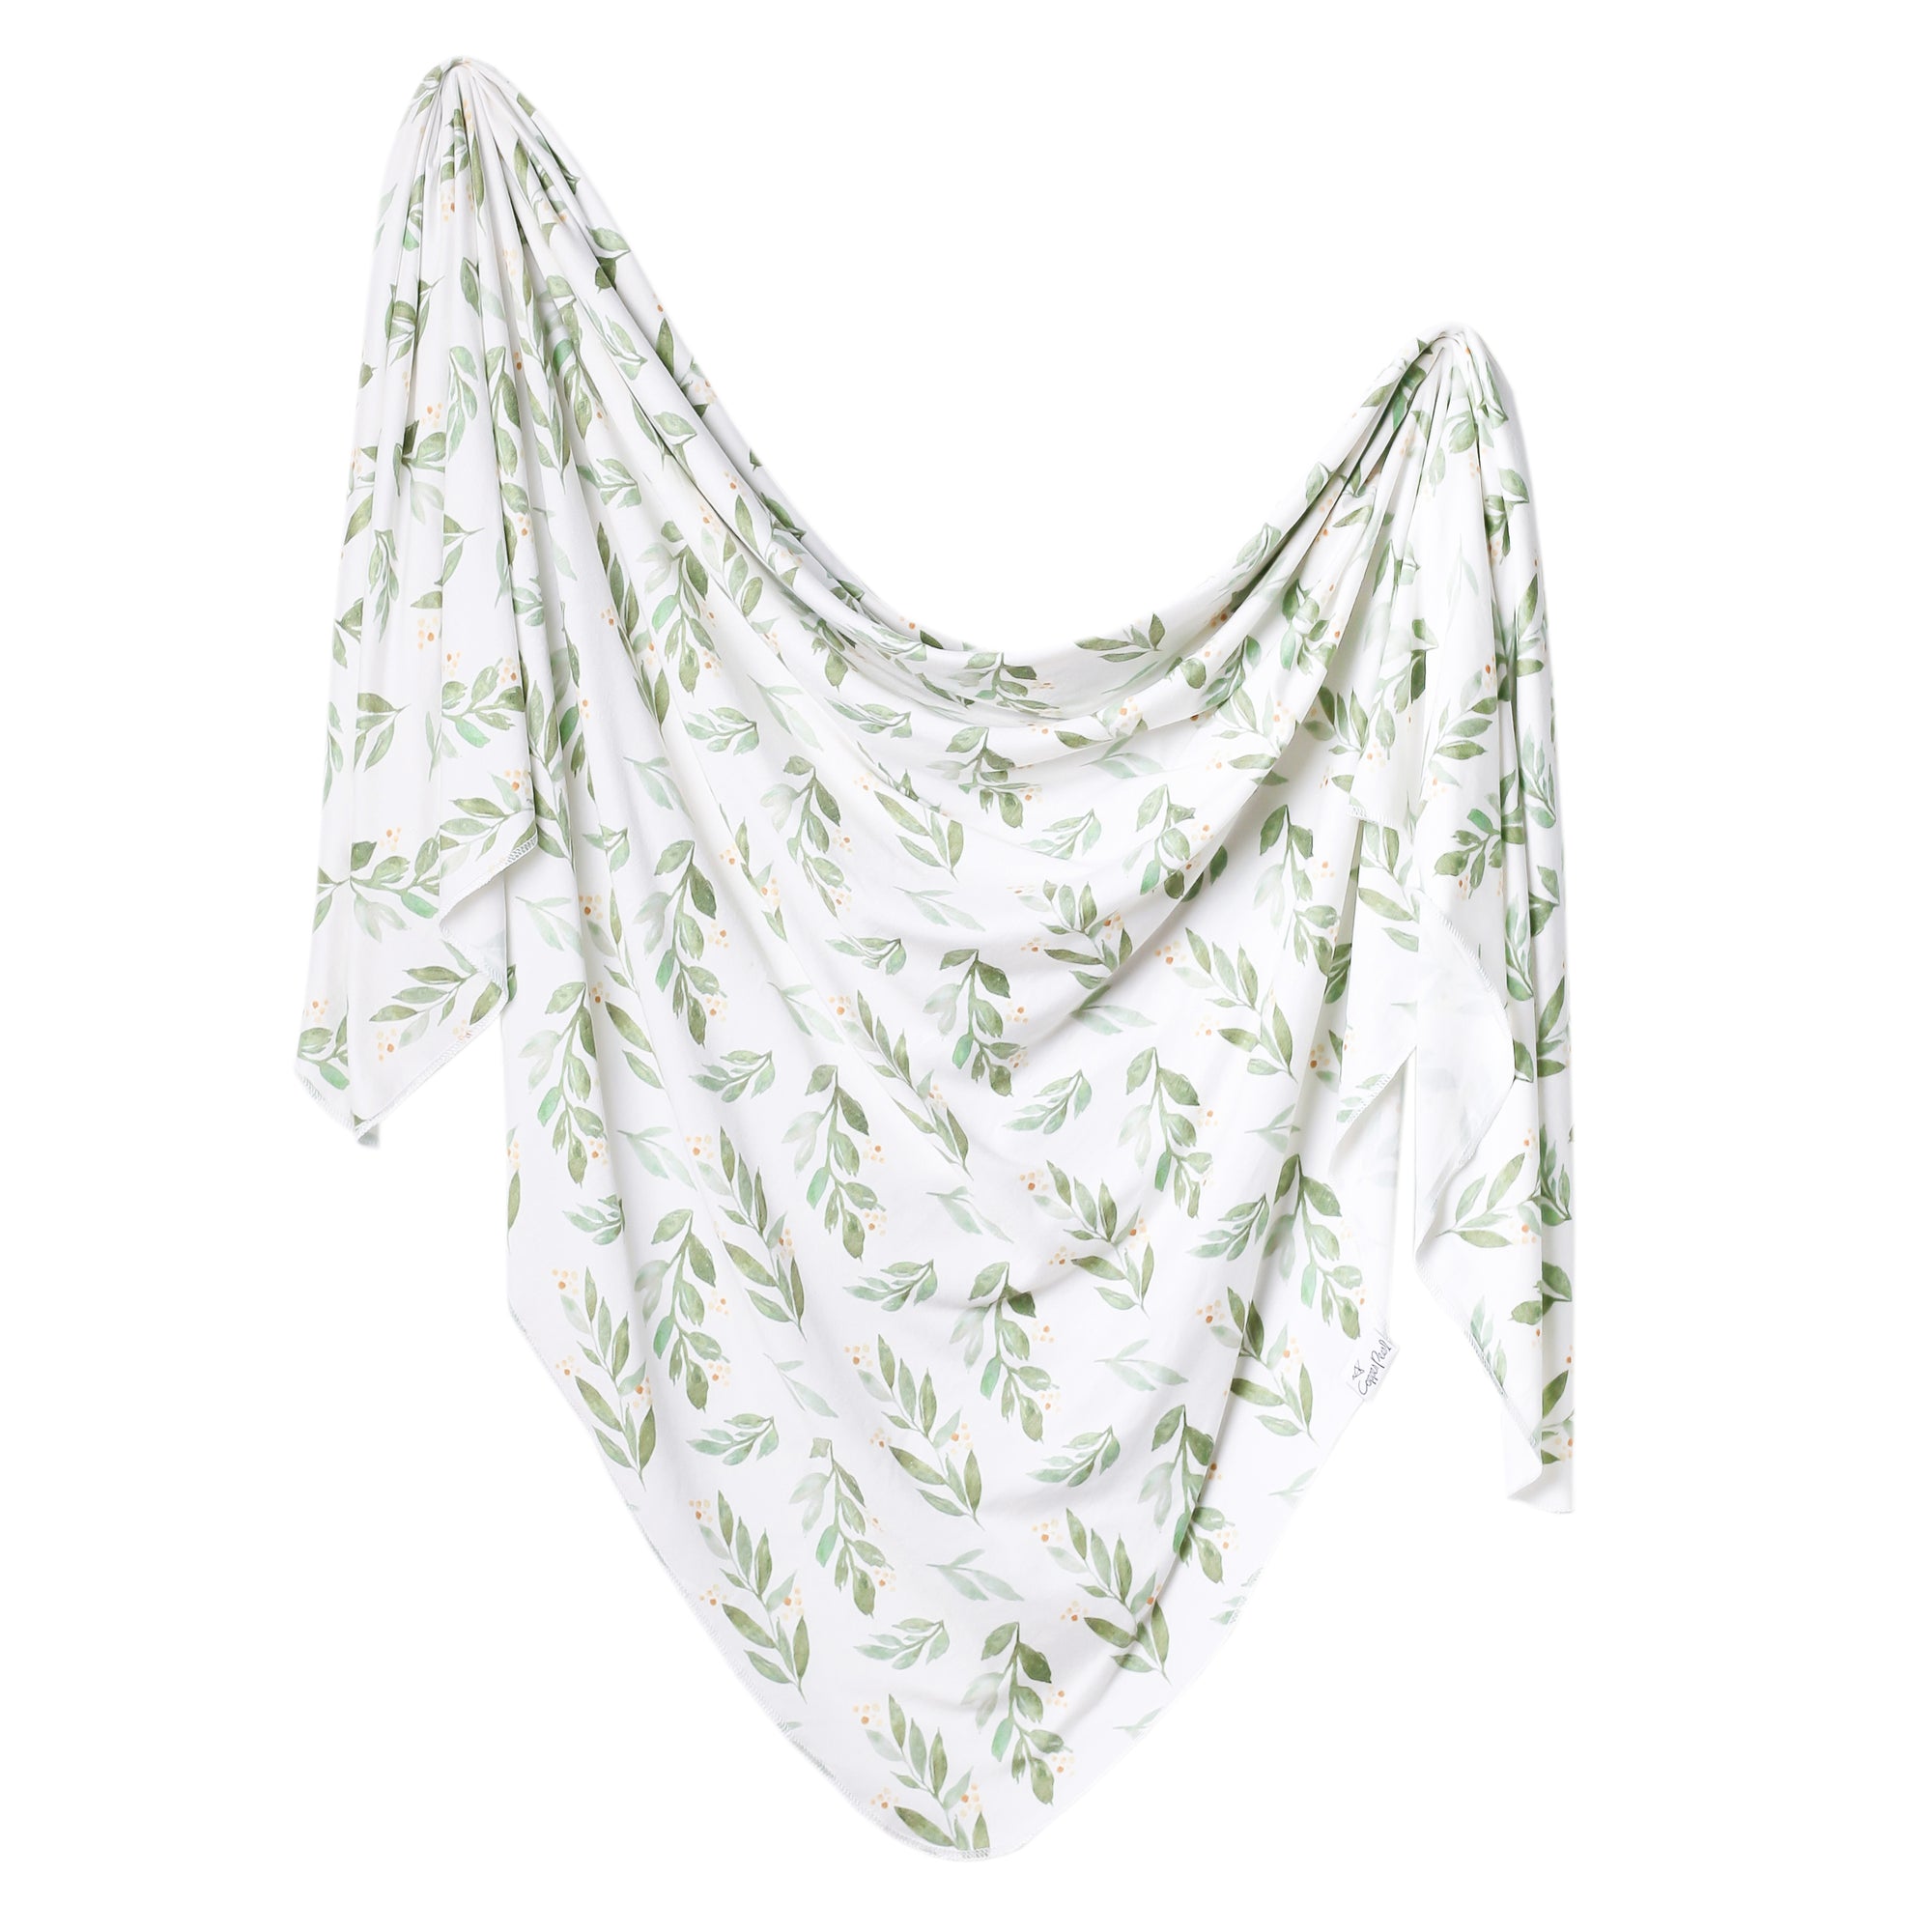 Knit Swaddle Blanket - Fern